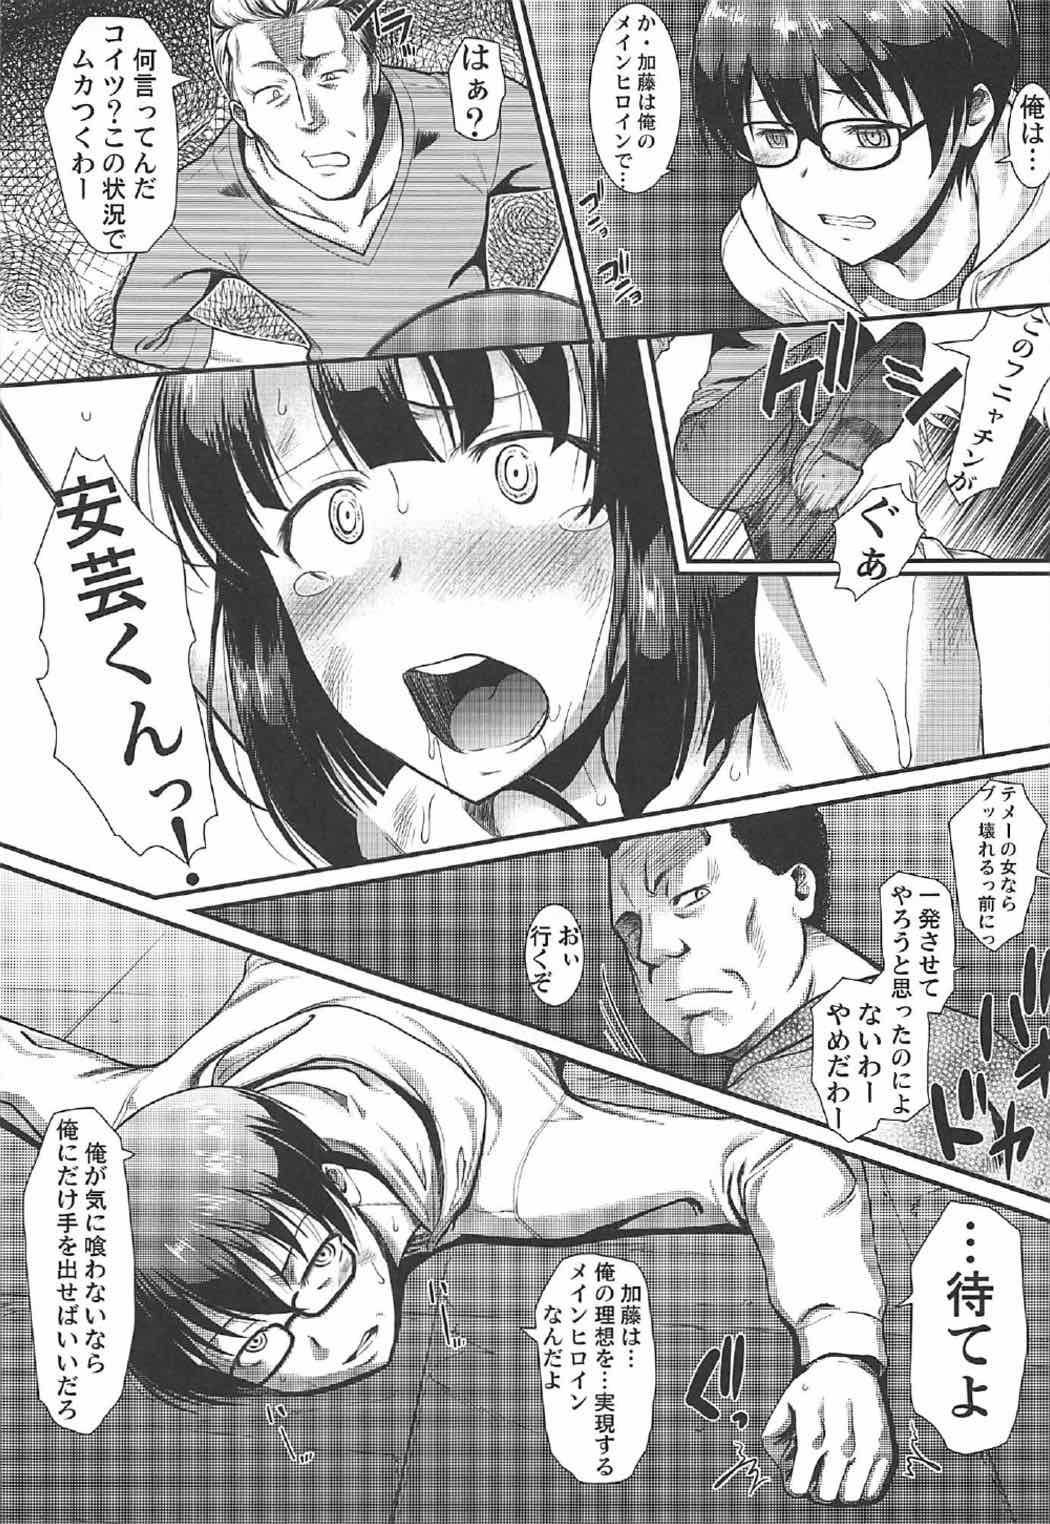 Gordibuena Kimi wa Boku no Taiyou da 2 - Saenai heroine no sodatekata Young Old - Page 8